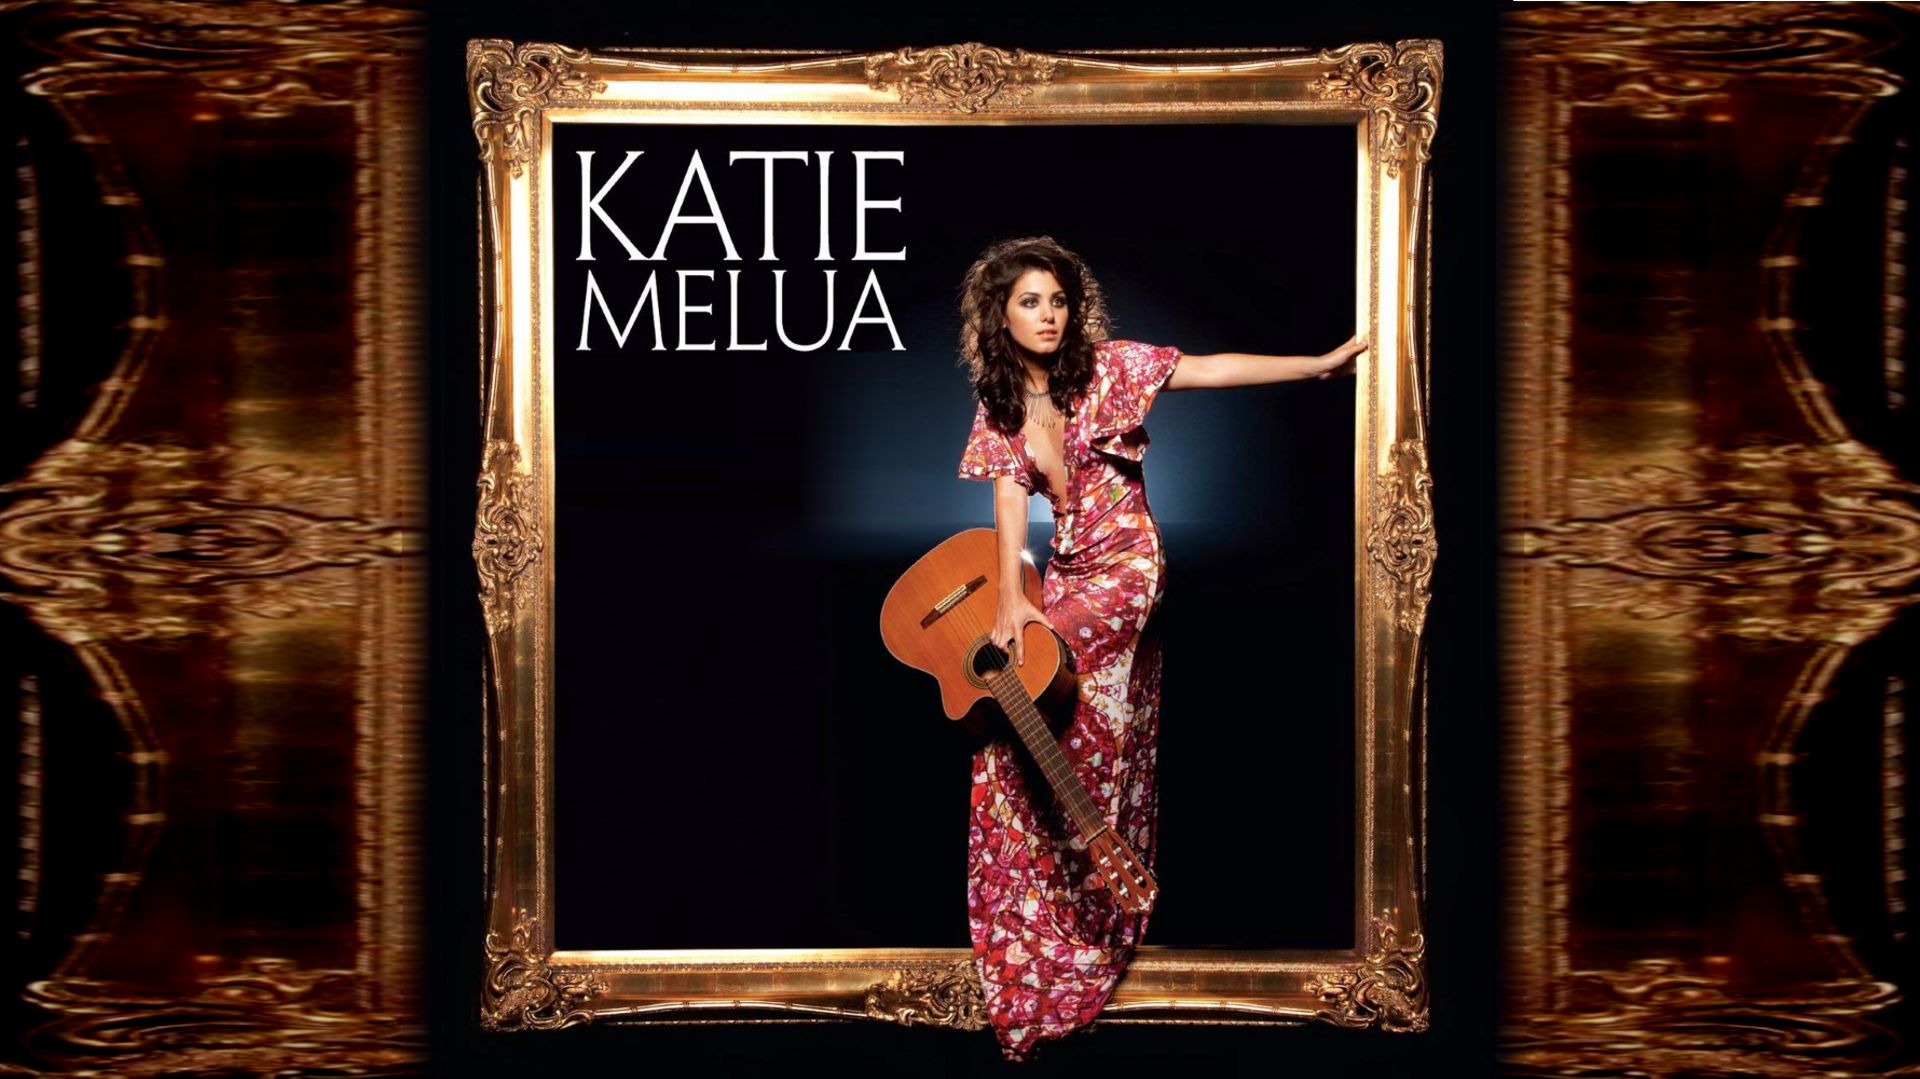 Katie melua wonderful life. Katie Melua - the House. Katie Melua Ultimate collection. Katie Melua 2020 album no. 8. Melua, Katie - the Katie Melua collection.